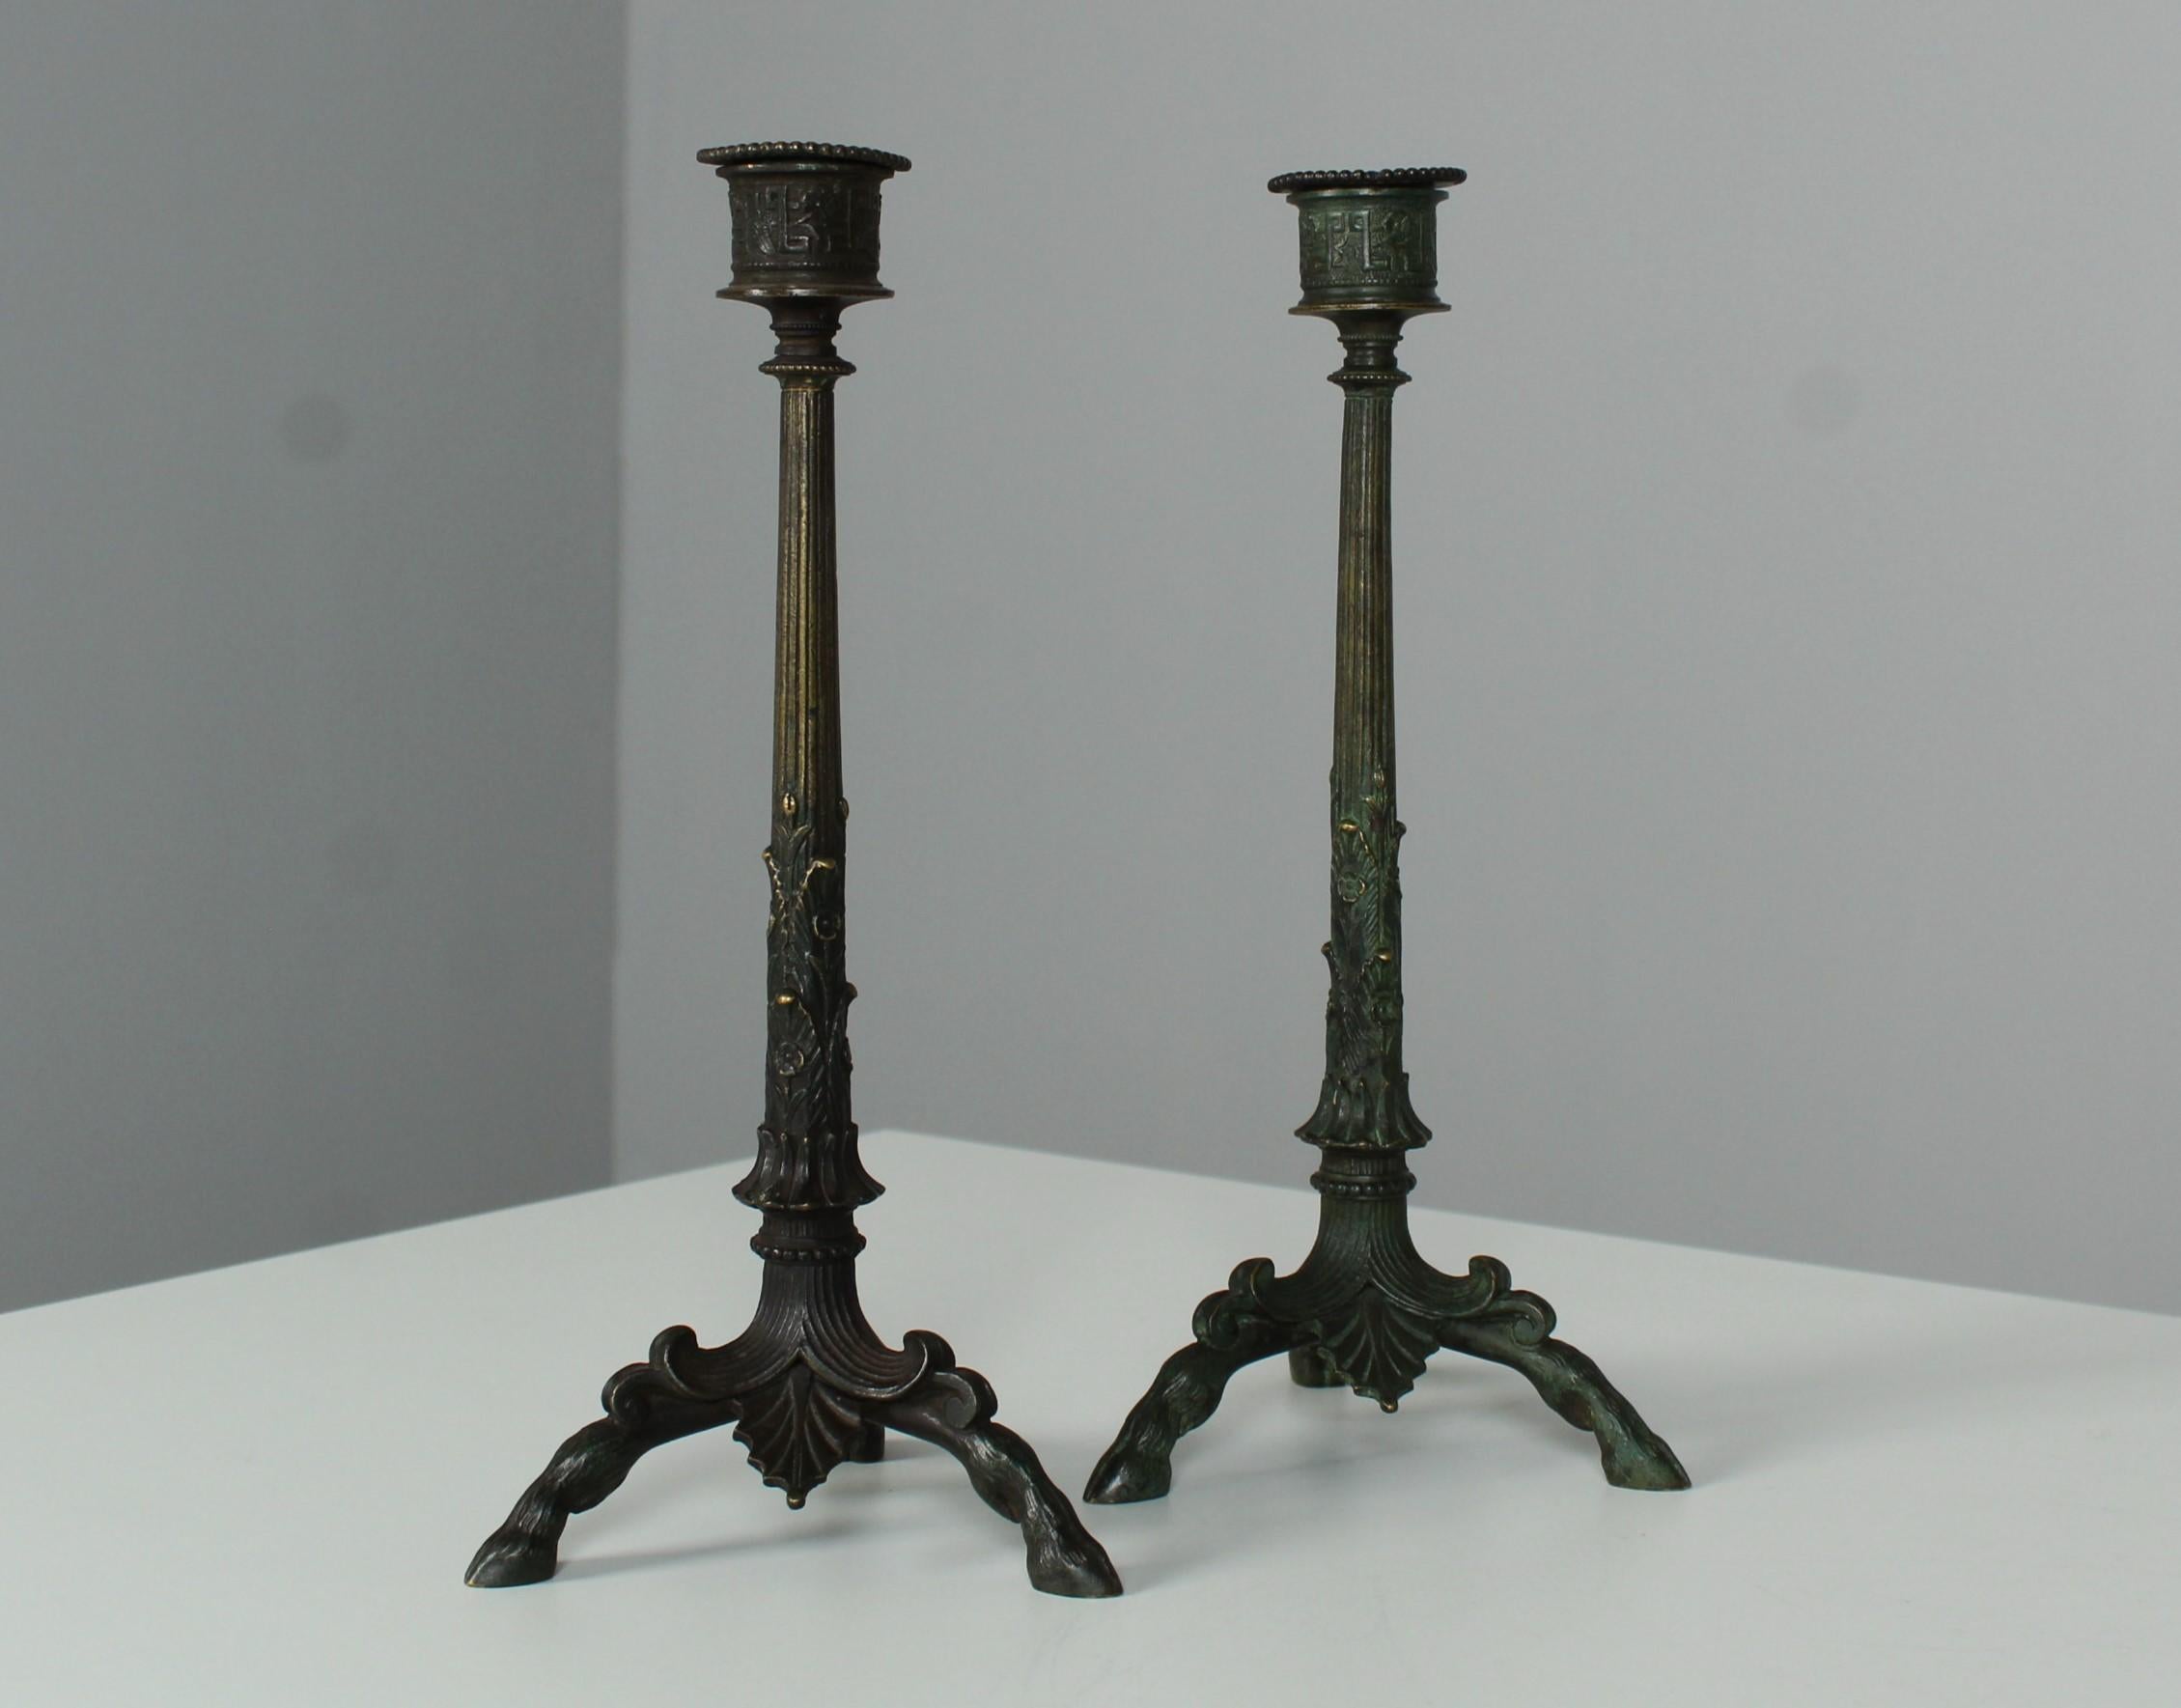 Schönes Paar Kerzenhalter aus Bronze, Frankreich, Ende 19.
Wunderschöne Ornamente und drei Füße, die Hirschhufe darstellen.
Patinierte Bronze.